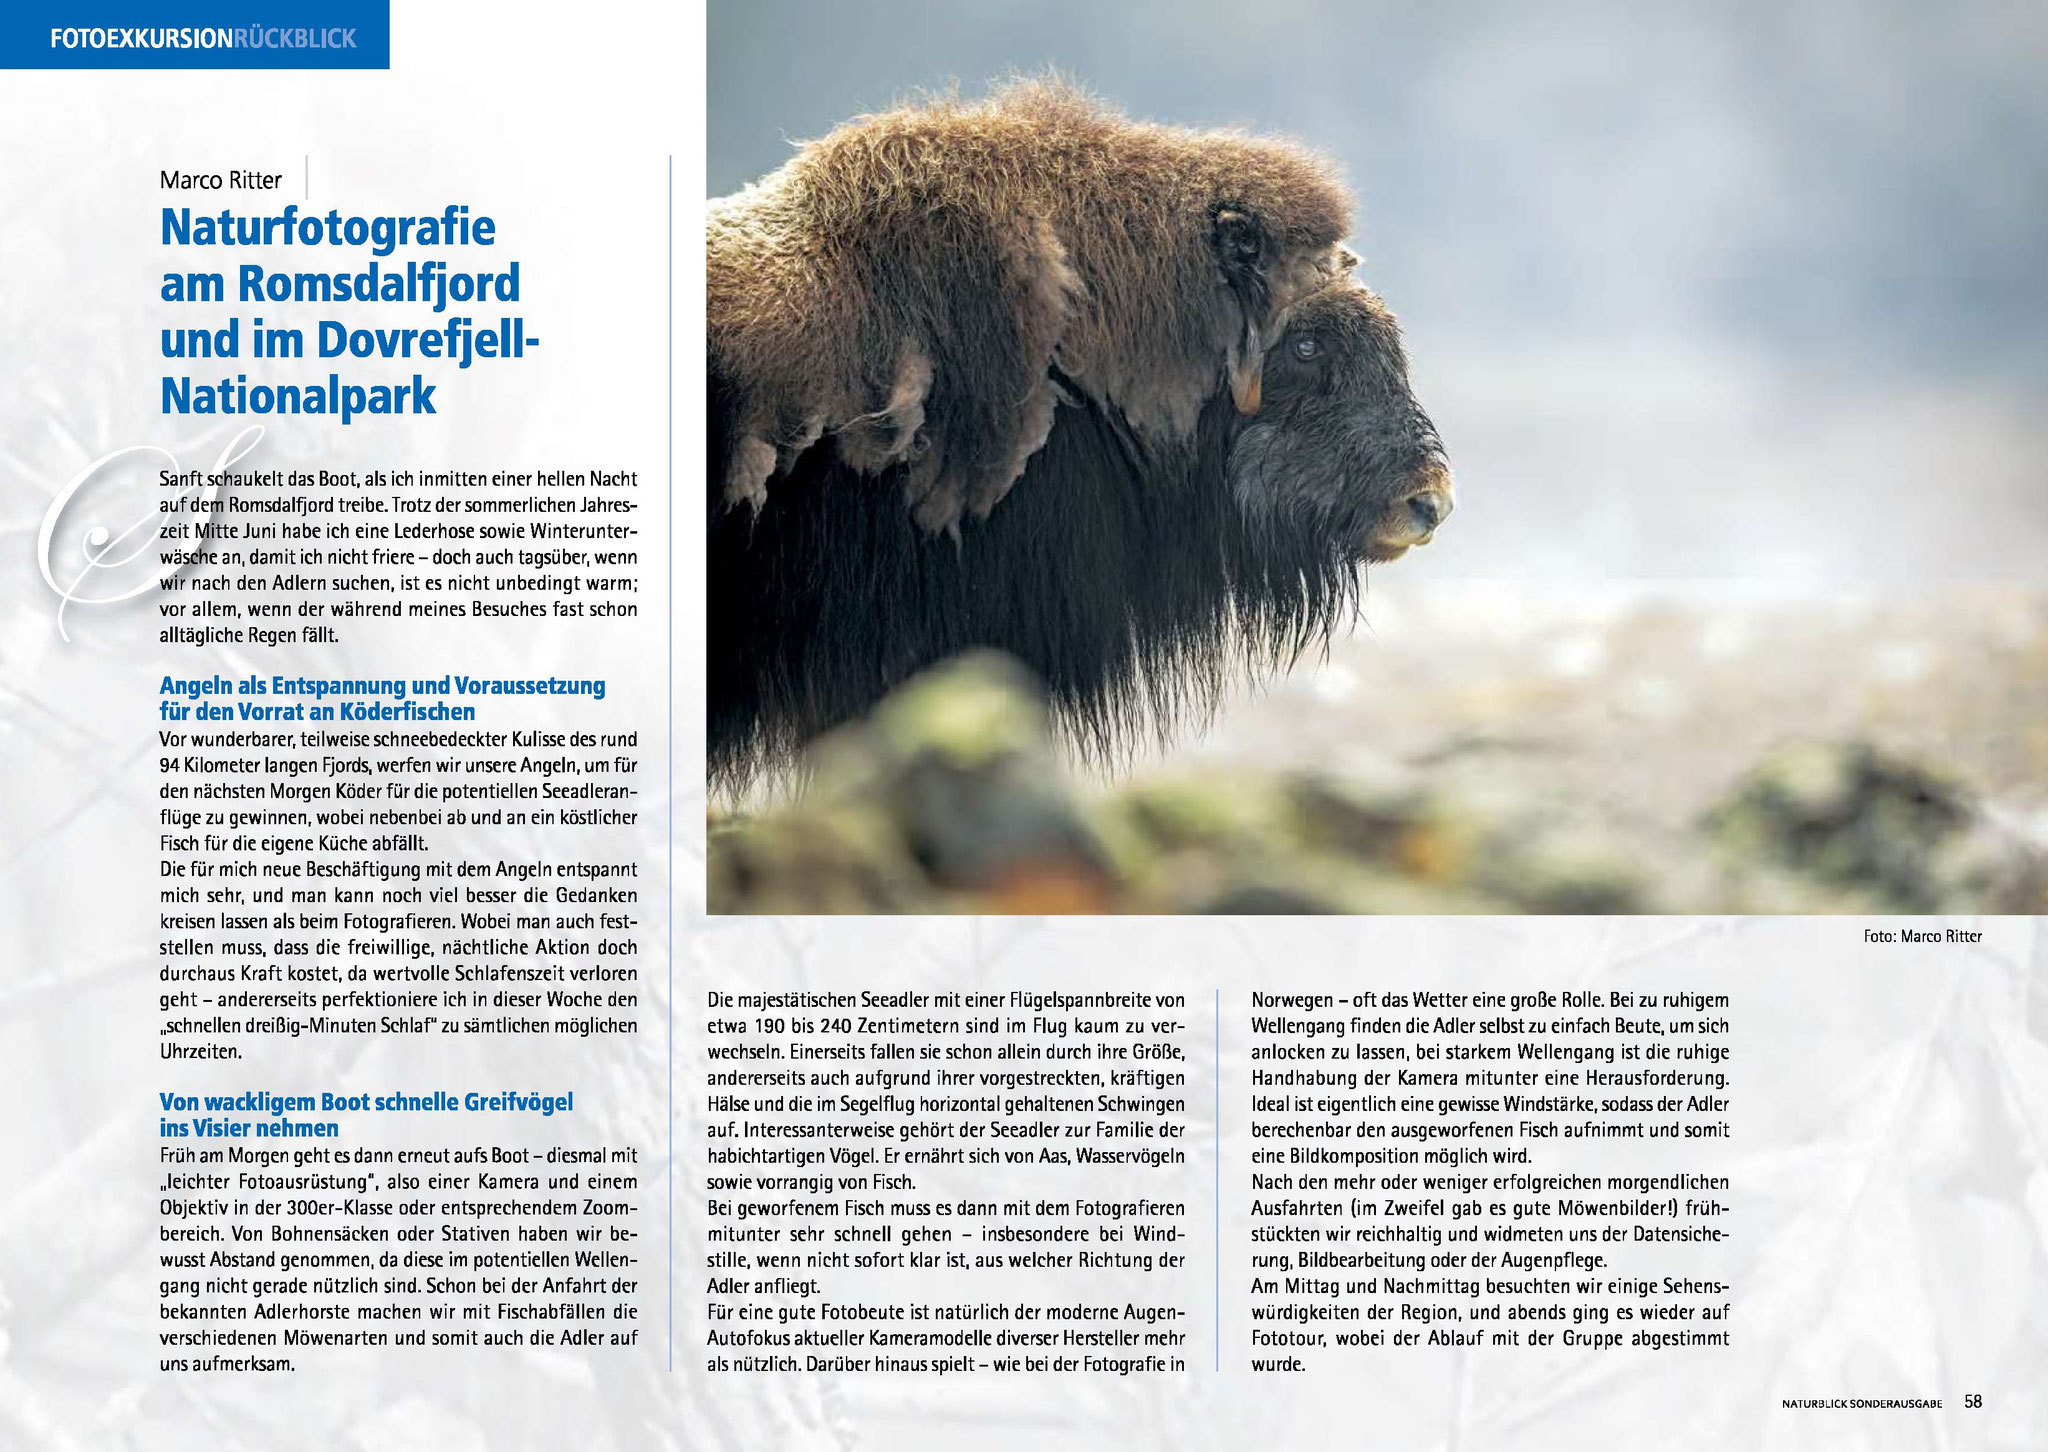 Bebilderung des Artikels "Naturfotografie am Romsdalfjord und im Dovrefjell-Nationalpark" in Naturblick Sonderausgabe 2022/2023